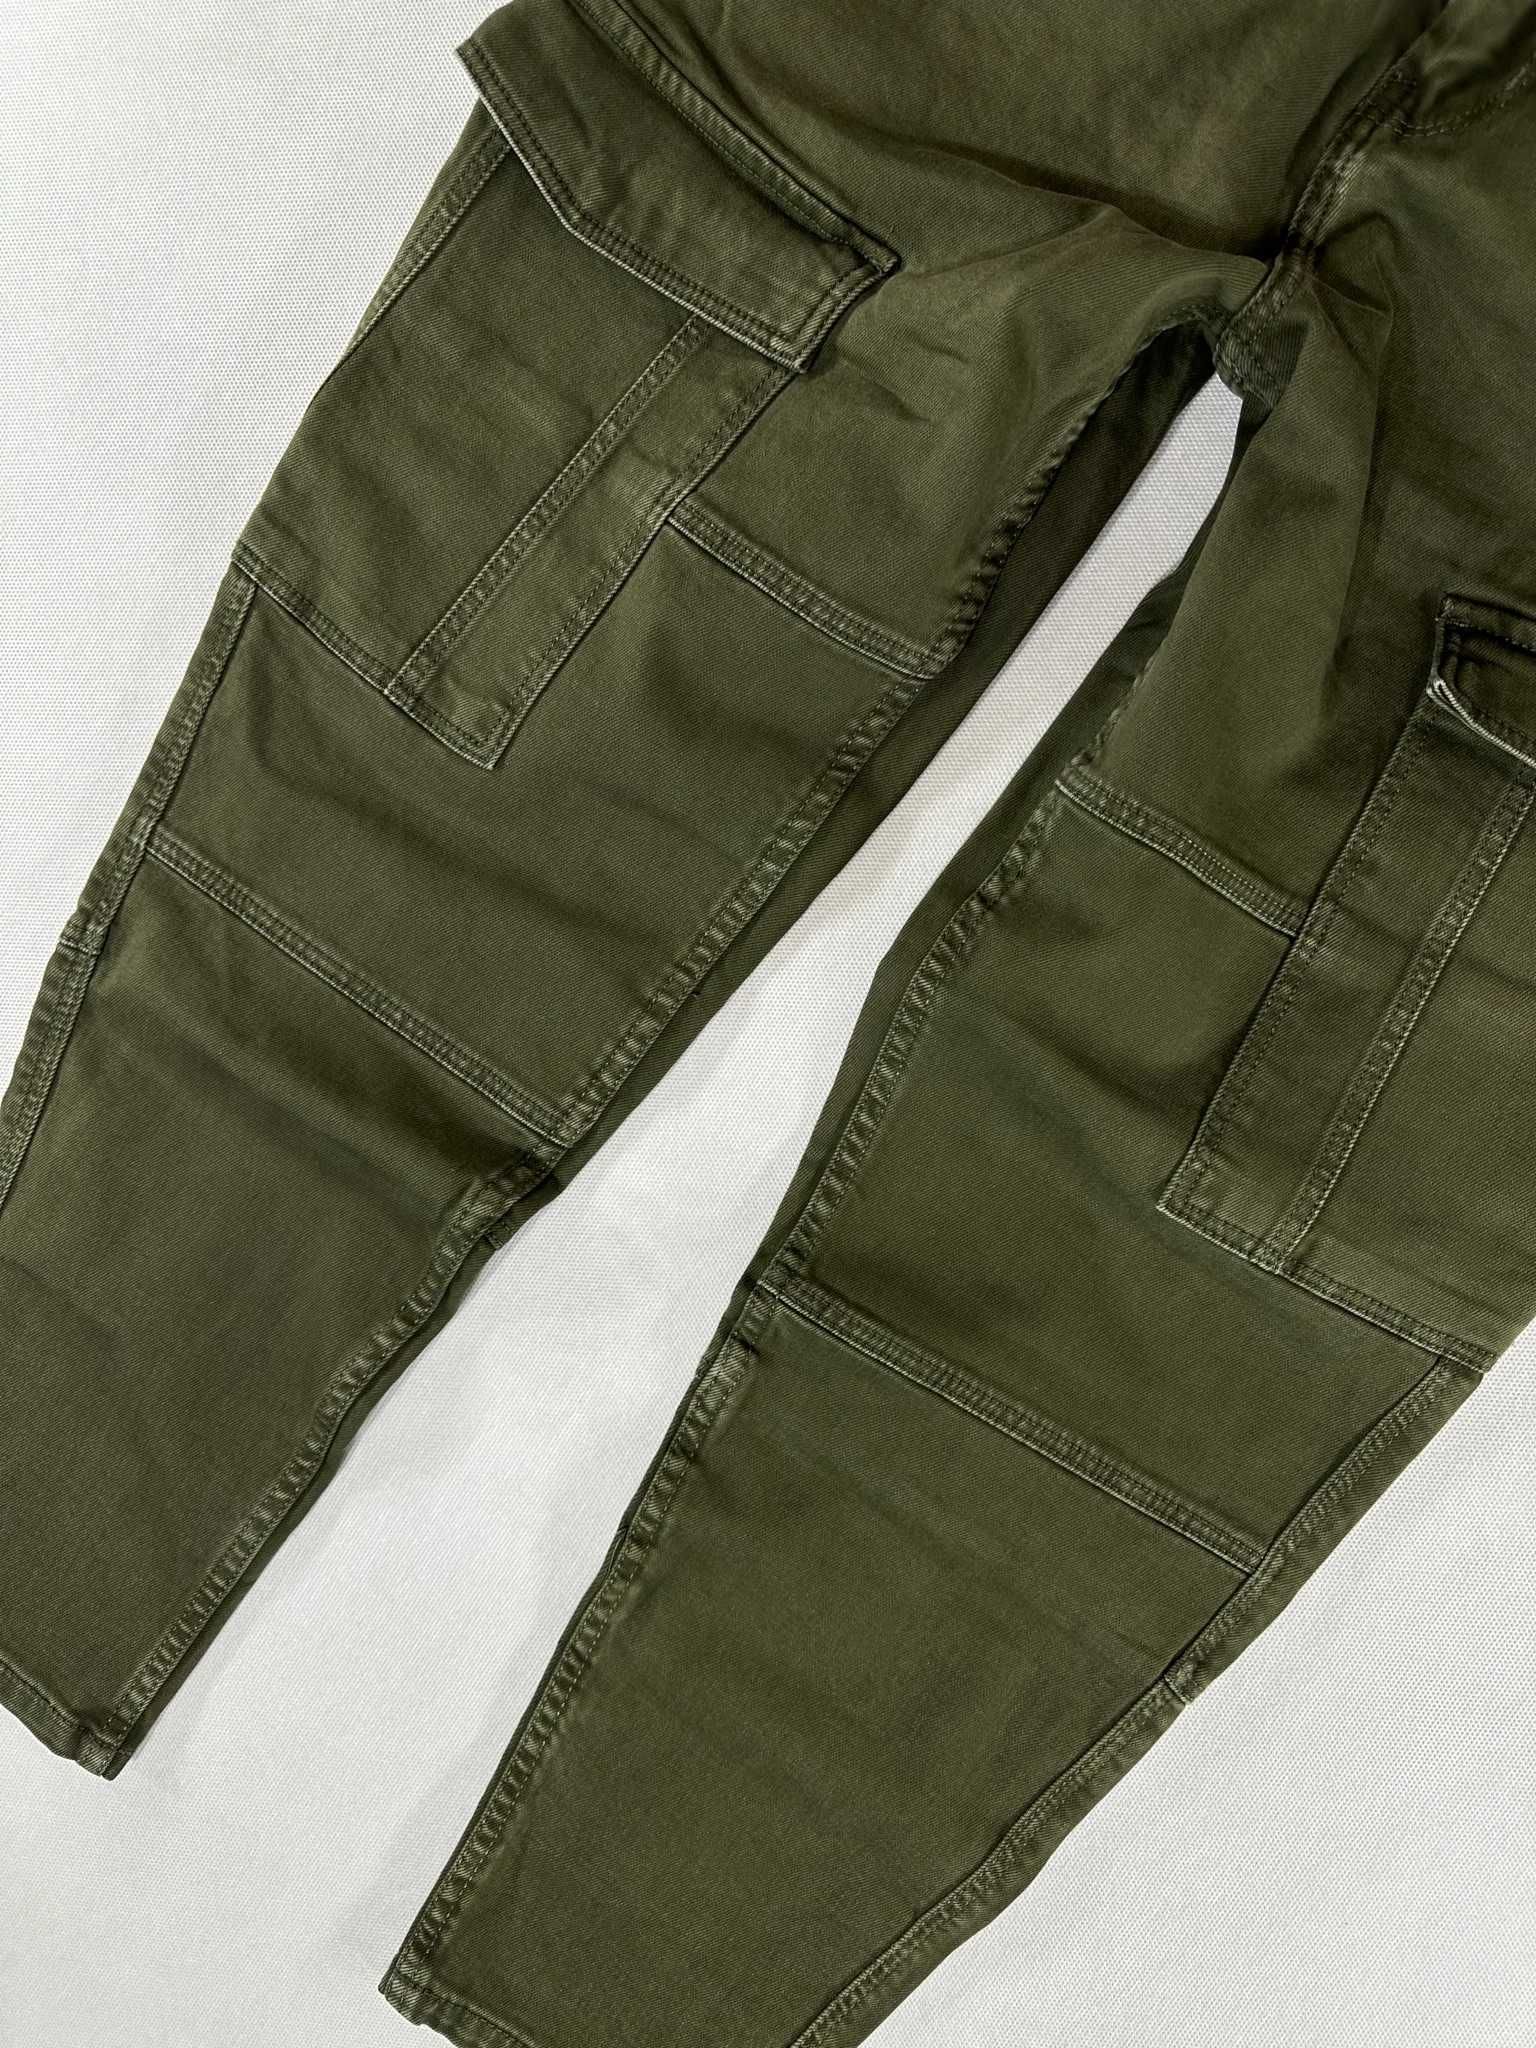 HOUSE jeans khaki bojówki męskie cargo slim fit W34L32 88cm